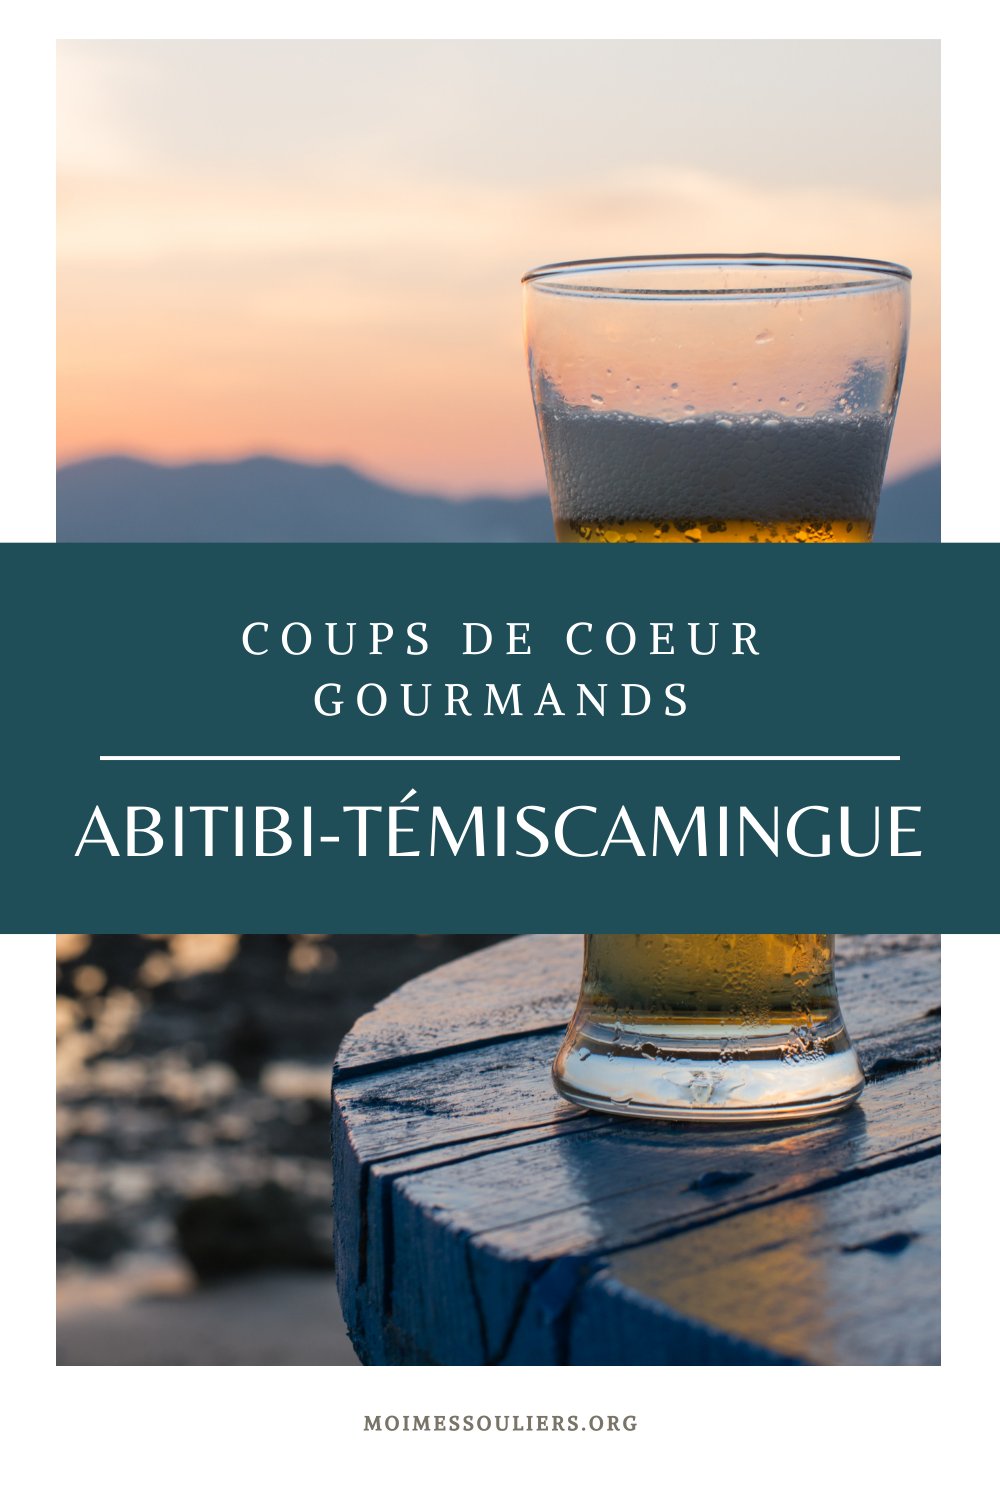 Coups de coeur gourmands en Abibiti-Témiscamingue, Québec